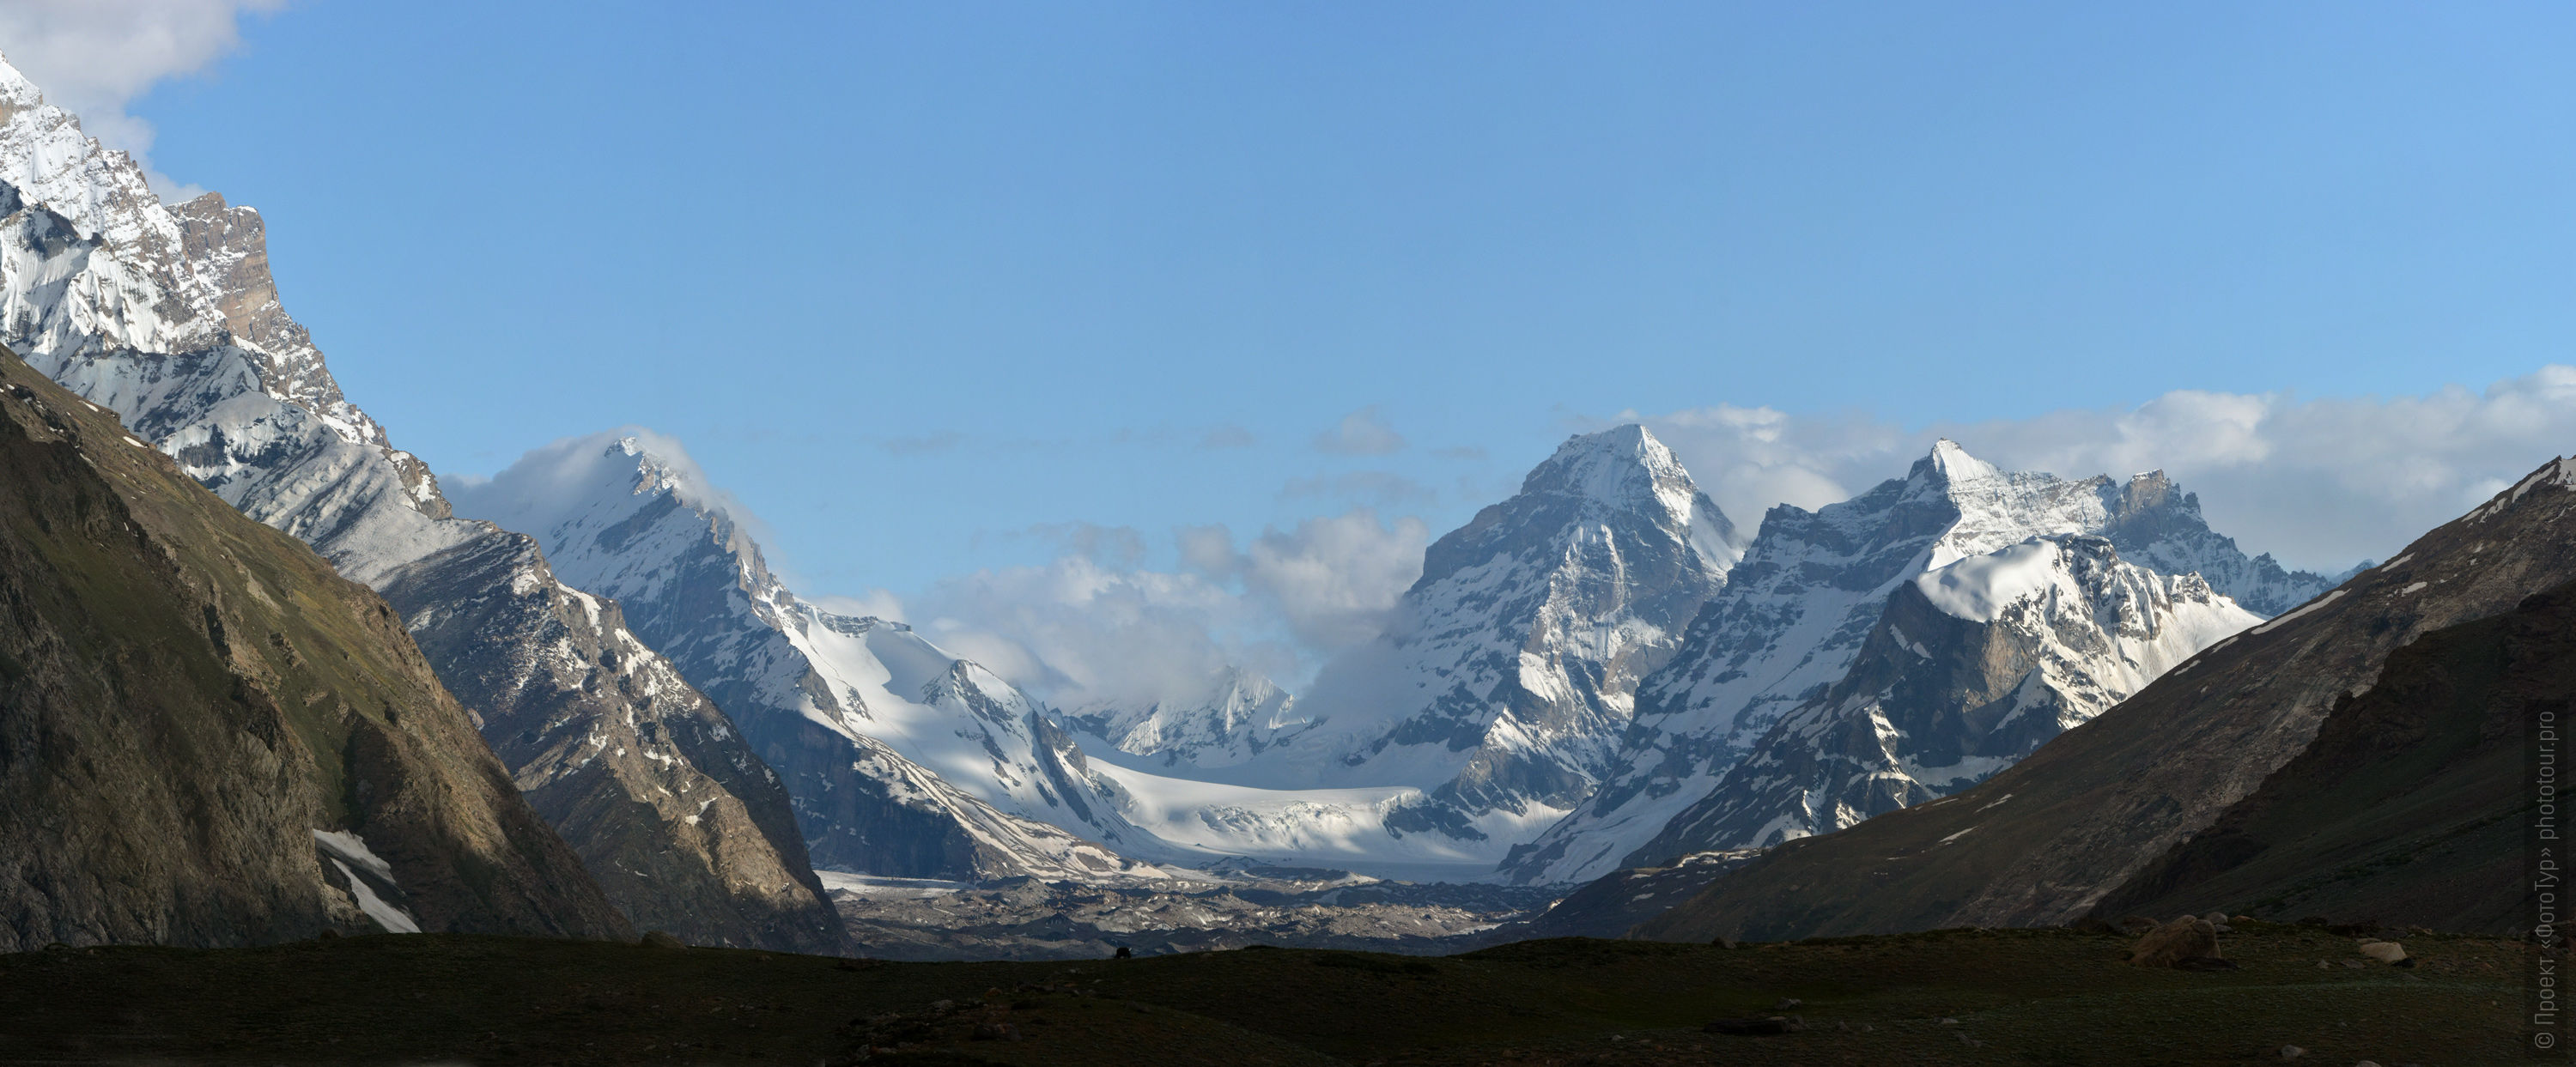 Ледники по дороге из Каргила в Падум, Занскар, Гималаи, Северная Индия.